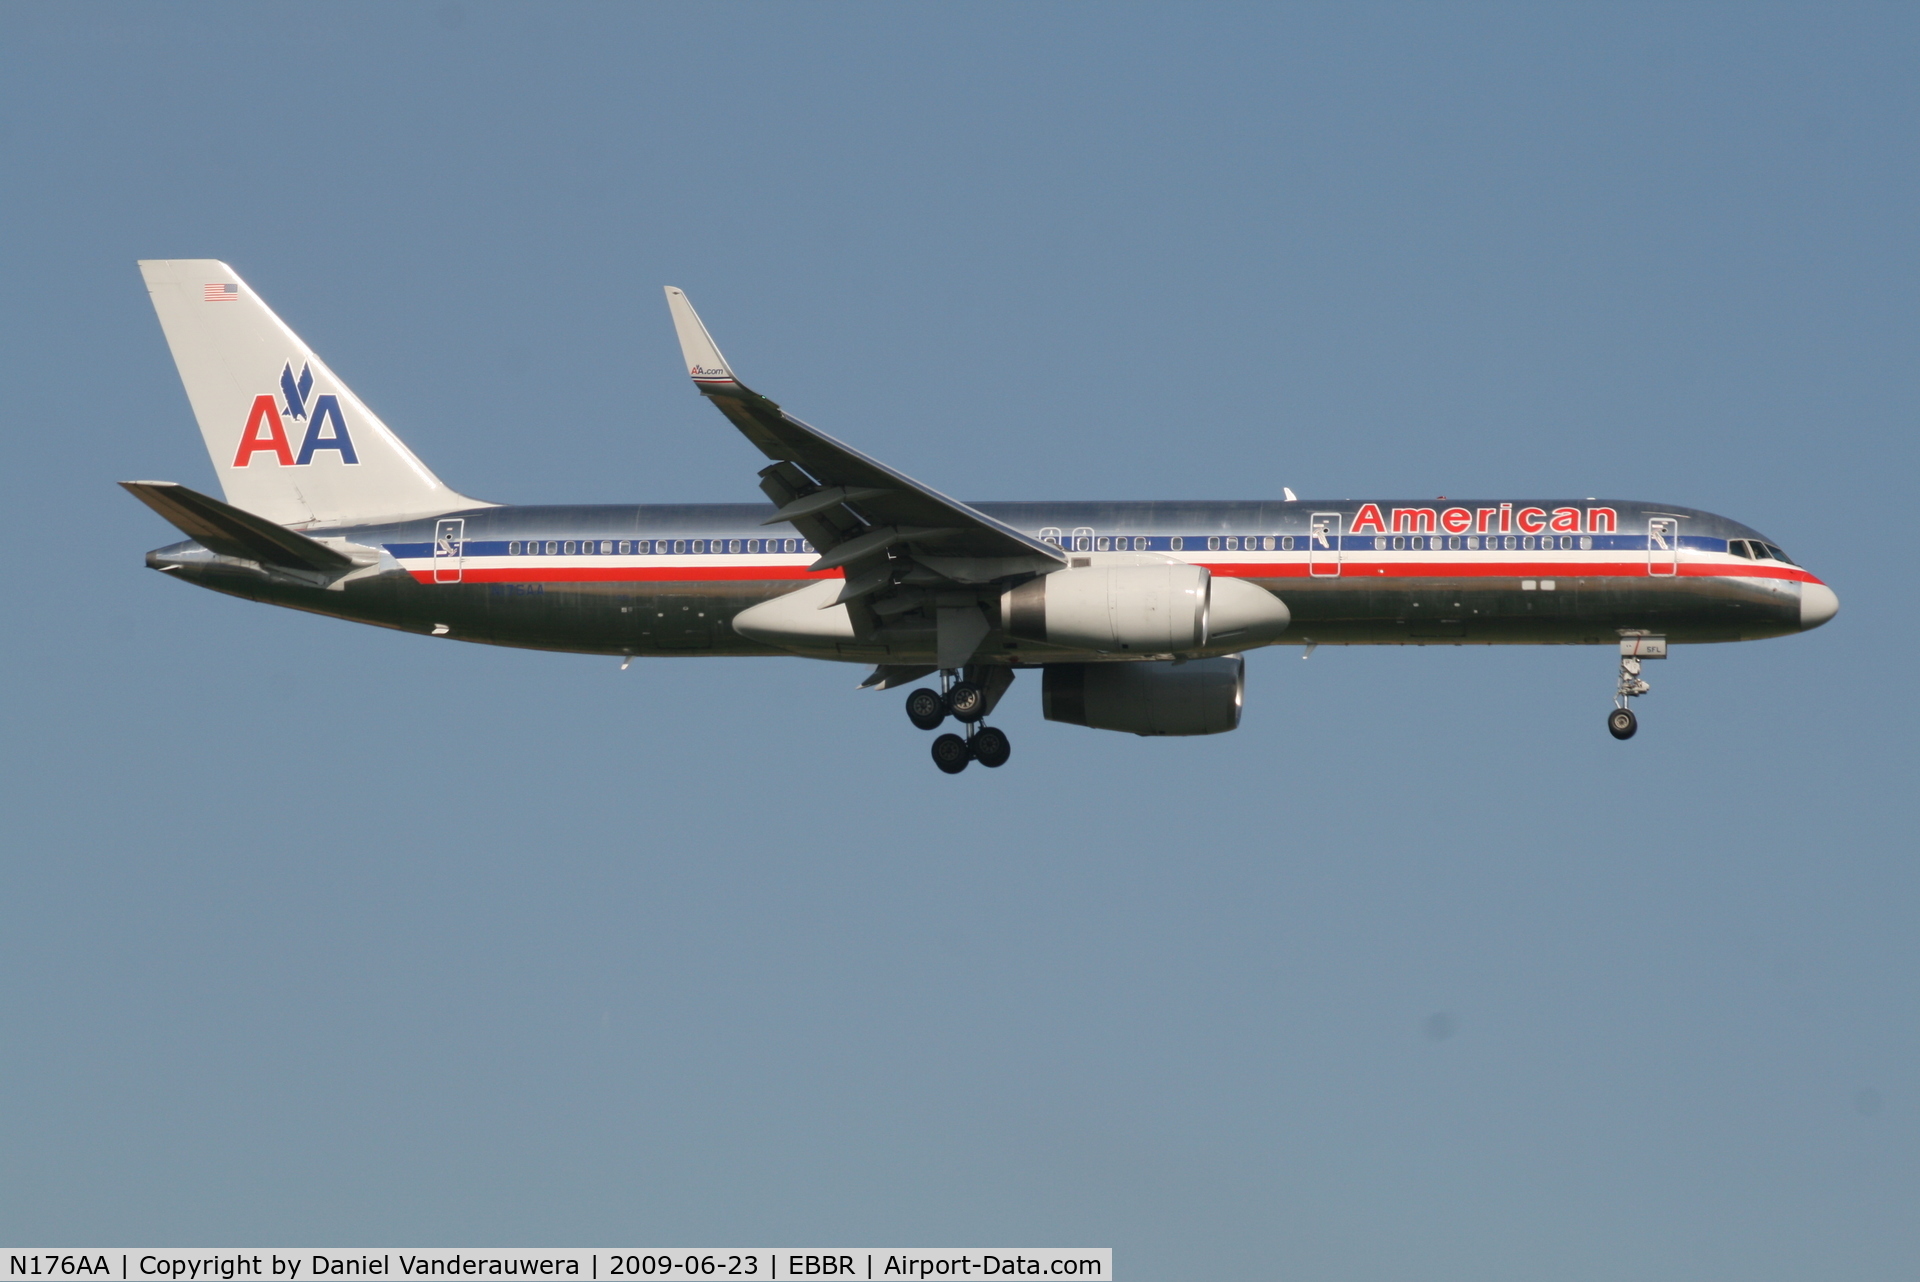 N176AA, 2001 Boeing 757-223 C/N 32395/994, Flight AA172 is descending to RWY 02